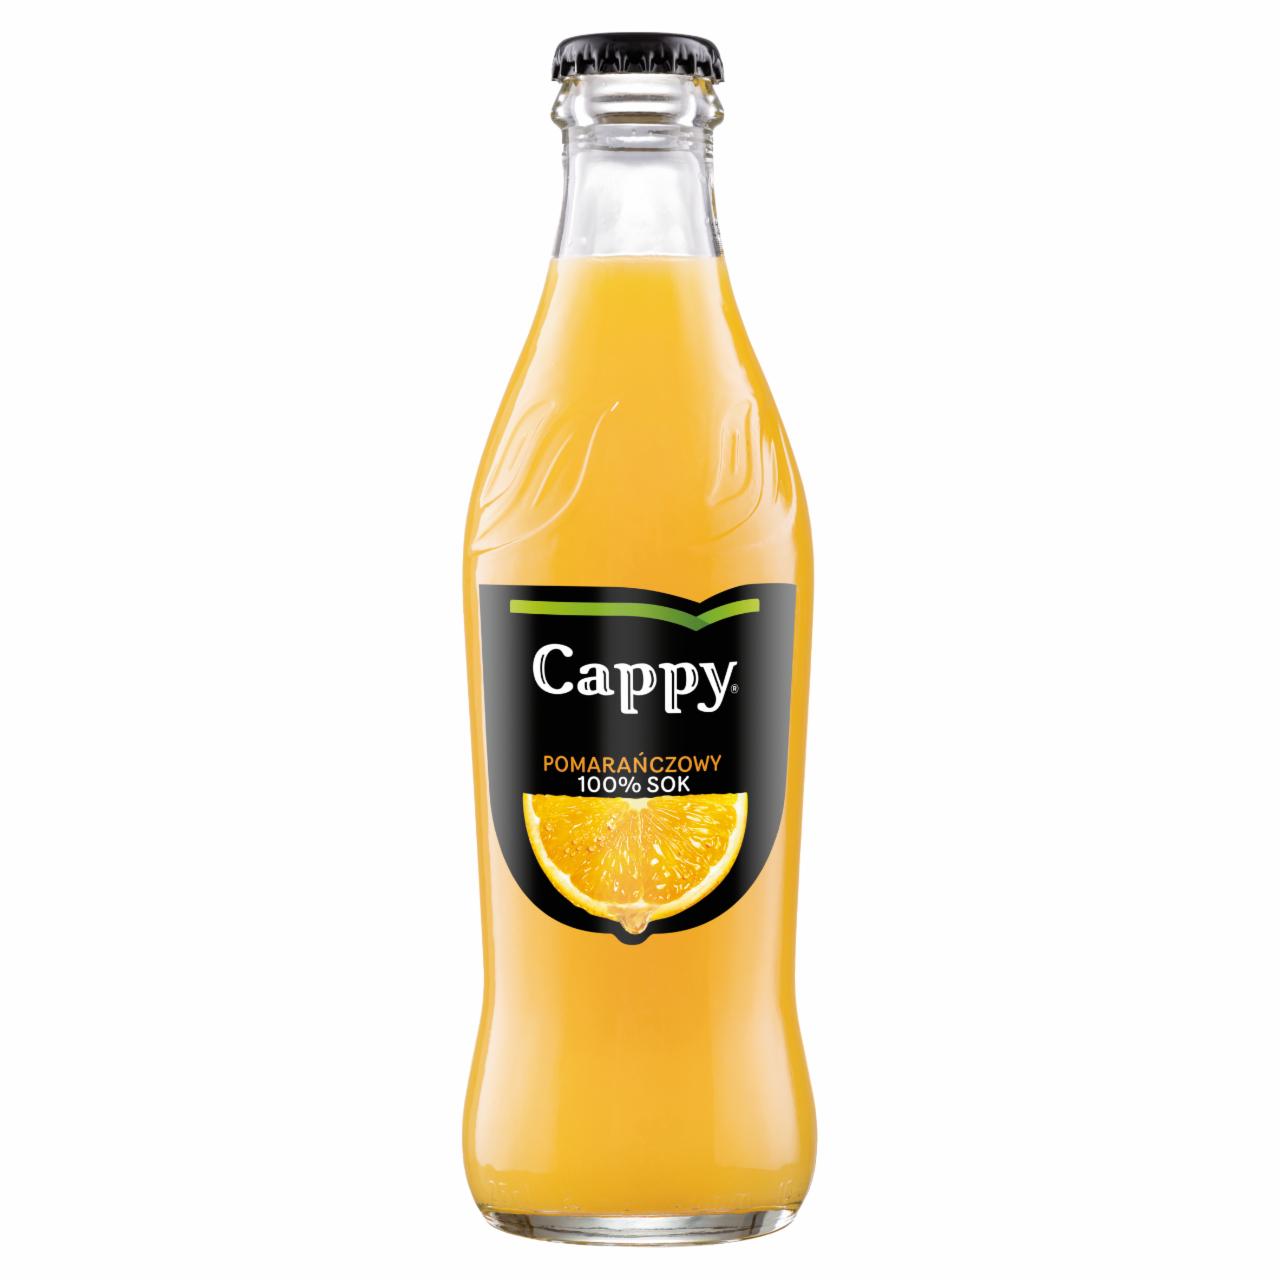 Zdjęcia - Cappy 100 % sok pomarańczowy 250 ml